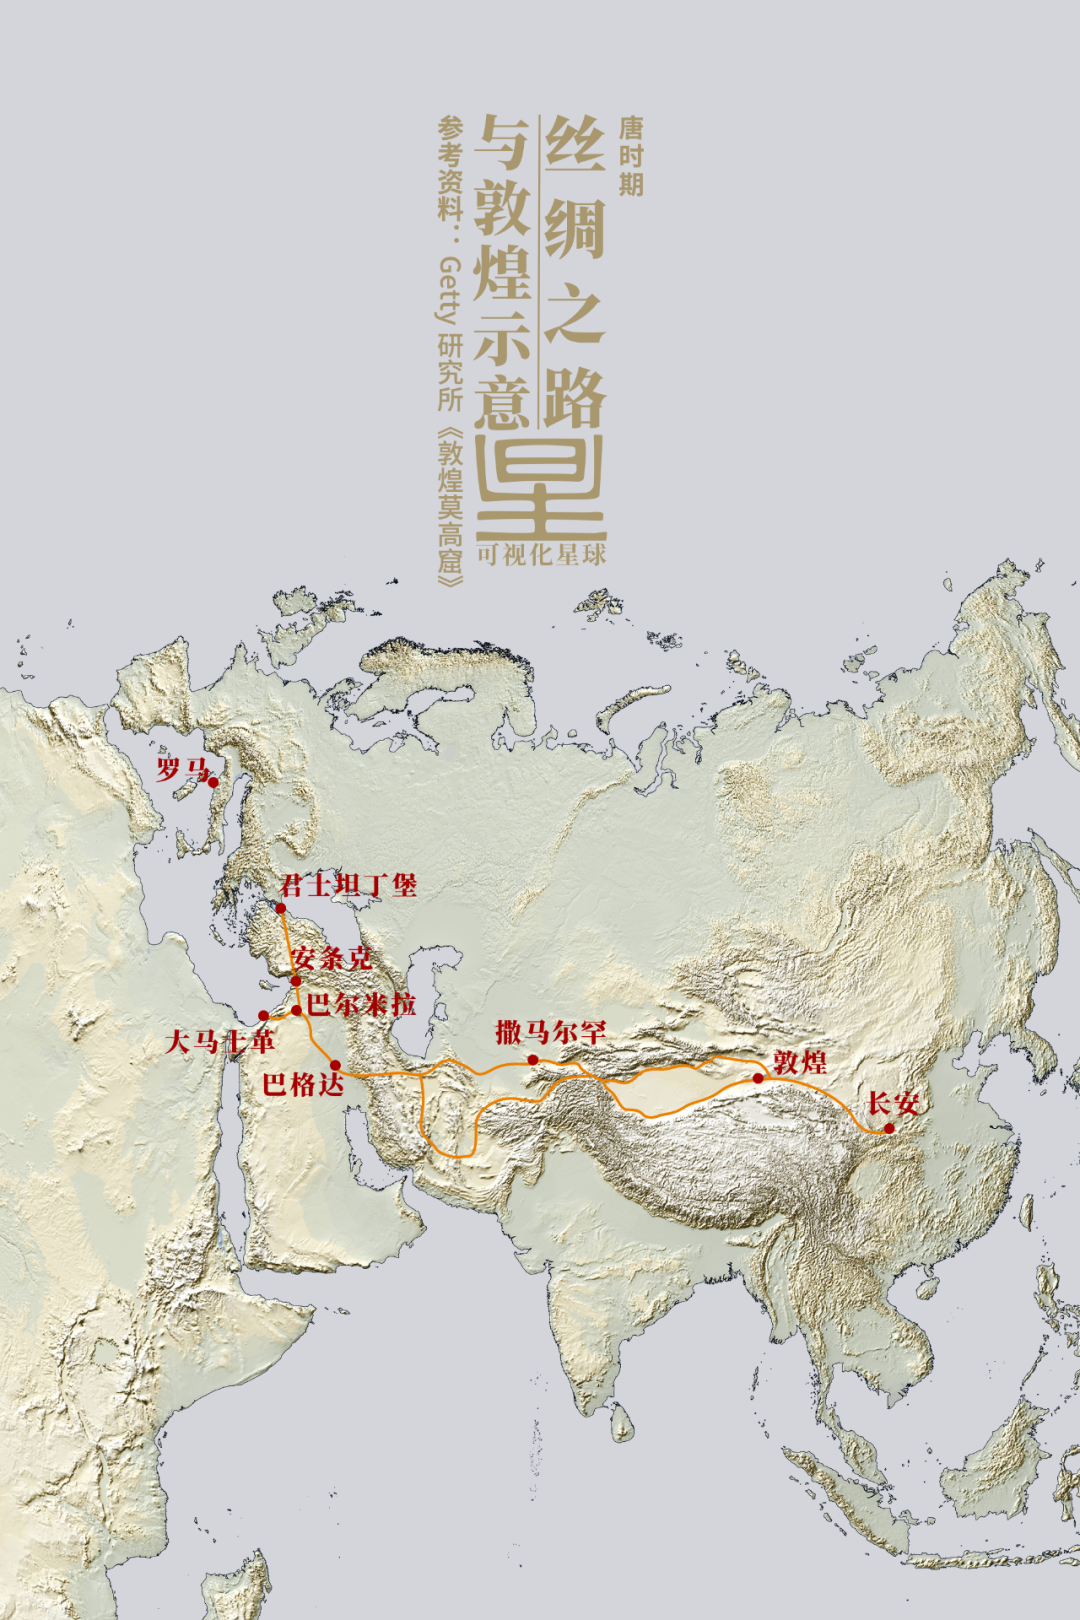 敦煌莫高窟地理位置图片